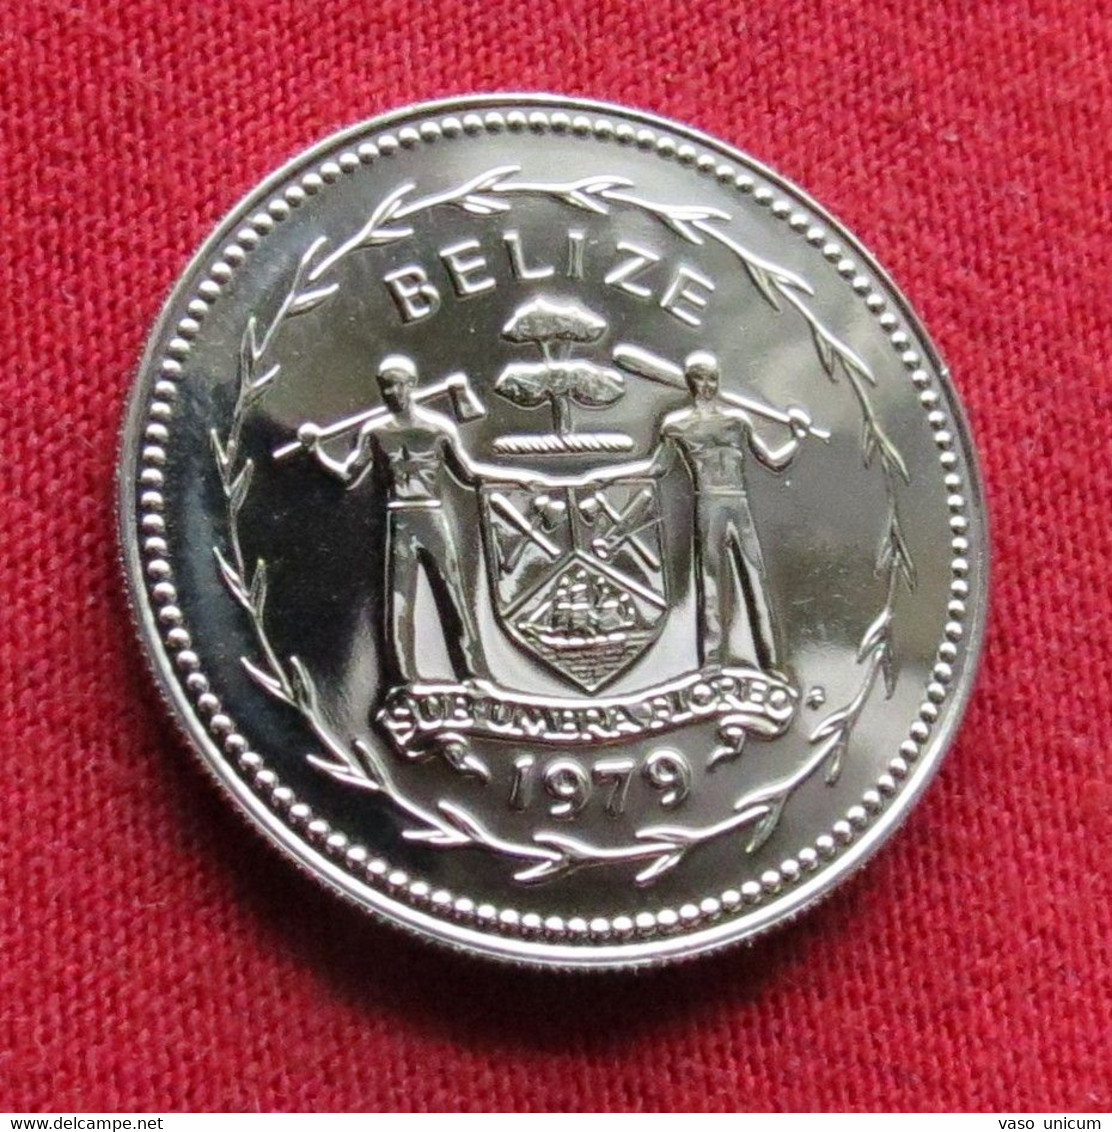 Belize 25 Cents 1979 Minted 808 Coins UNC - Belize